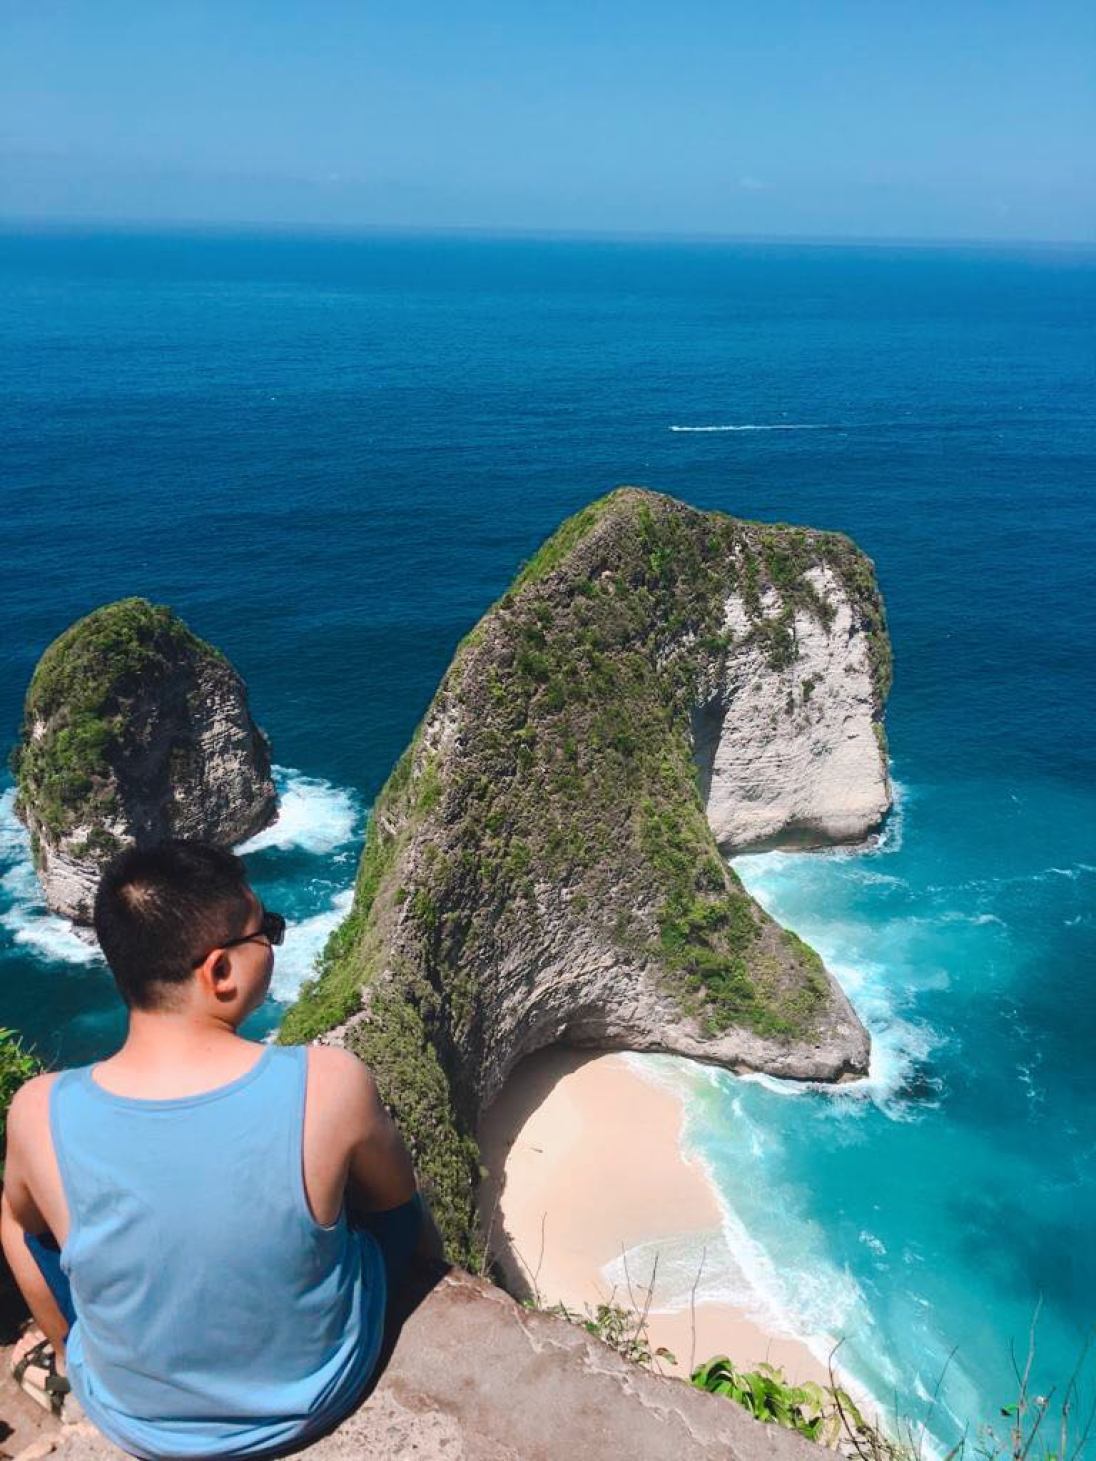 悬崖峭壁，人显得多么地渺小。 此刻，担忧已不是烦恼。 巴厘岛绝佳的放松圣地！